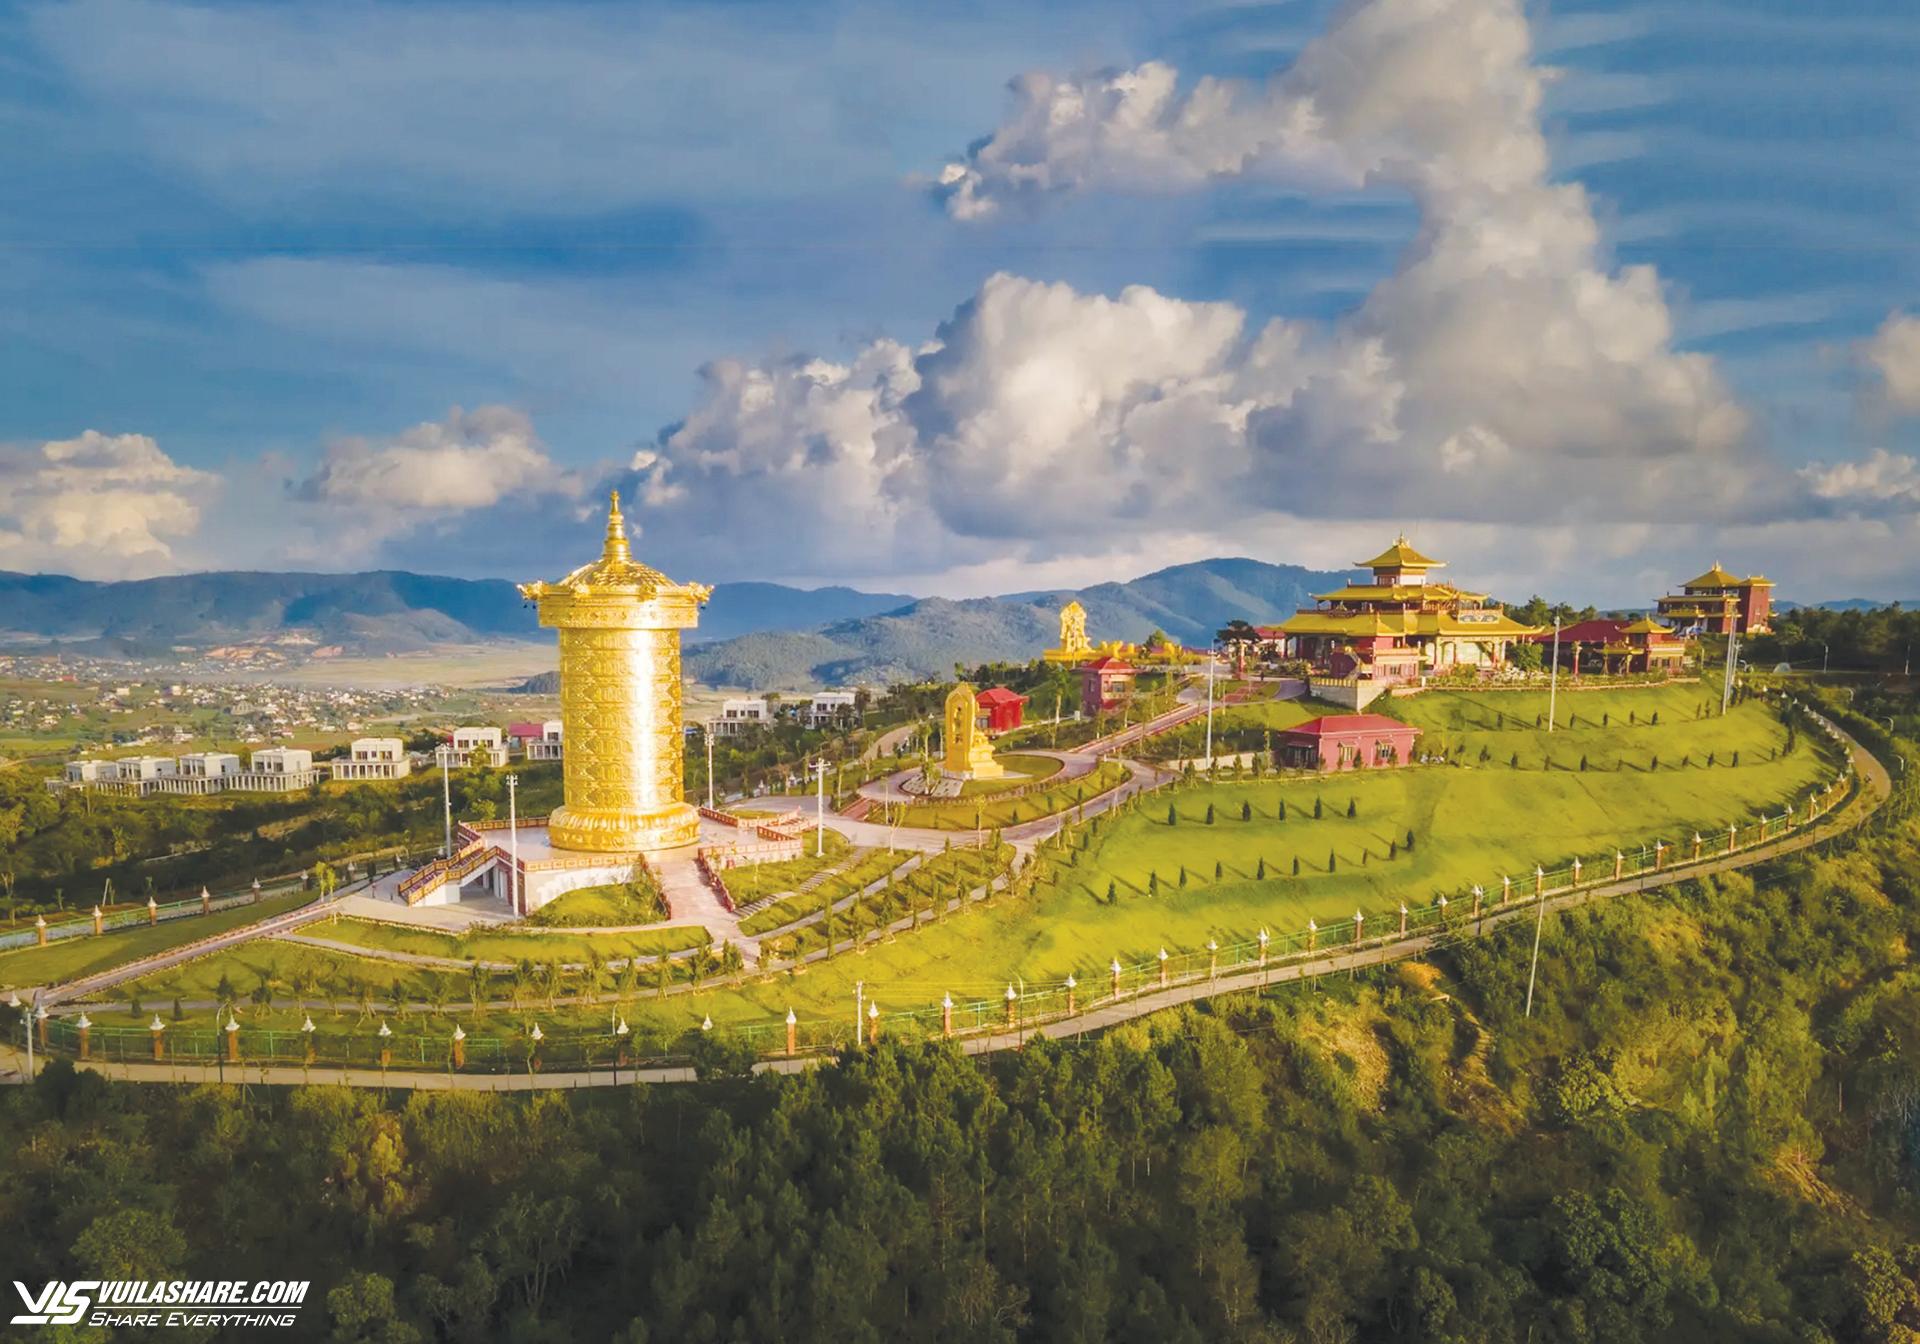 Samten Hills Dalat, KDL văn hóa tâm linh Phật giáo Kim Cương Thừa với Đại bảo tháp kinh luân lớn nhất thế giới cùng hệ thống tượng Phật linh thiêng